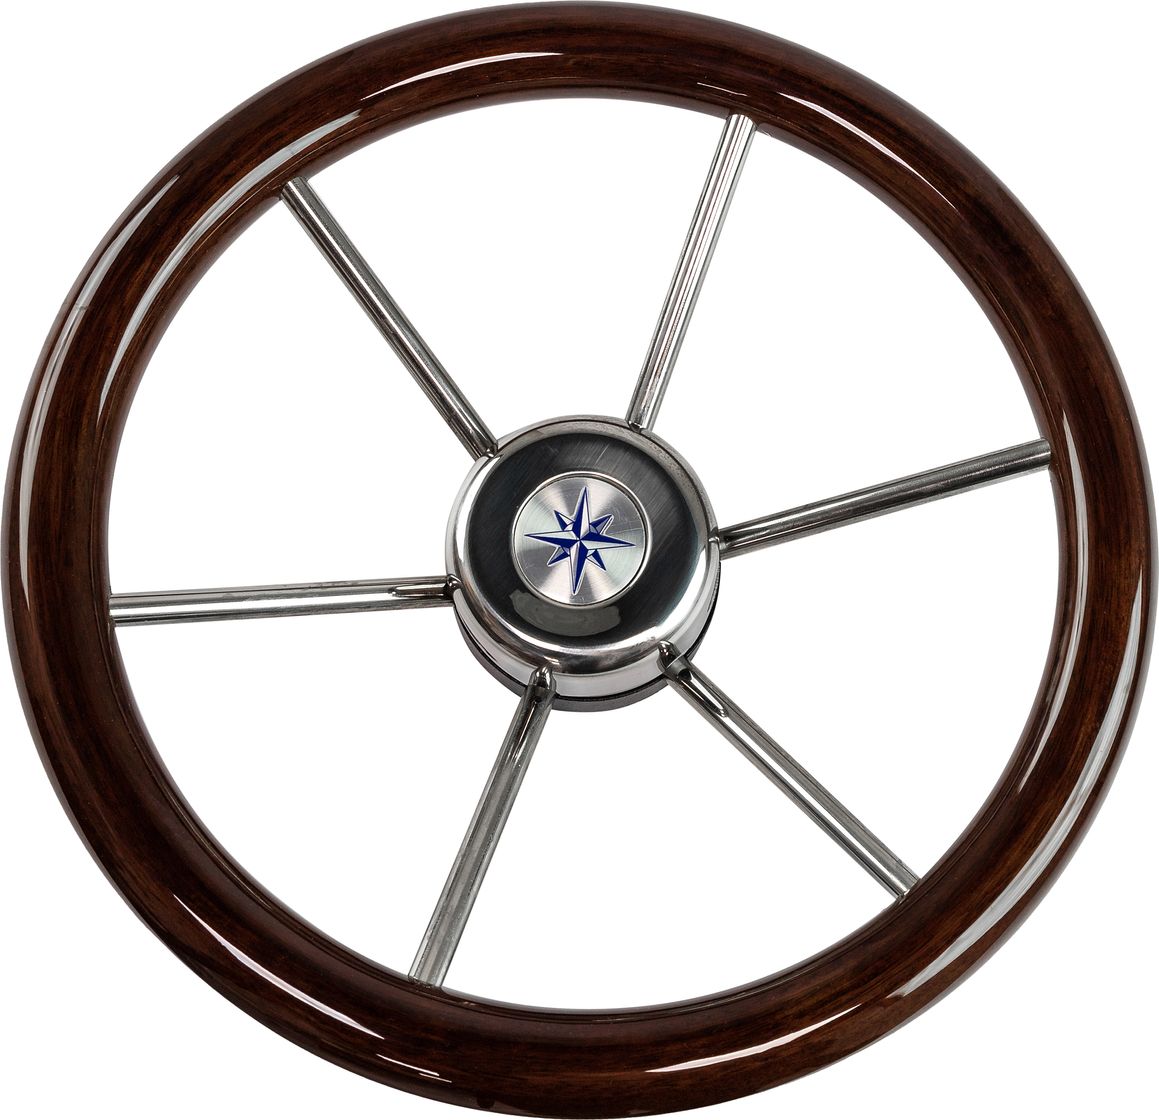 Рулевое колесо LEADER WOOD деревянный обод серебряные спицы д. 340 мм VN7340-33 рулевое колесо leader plast обод серебряные спицы д 330 мм vn8330 01